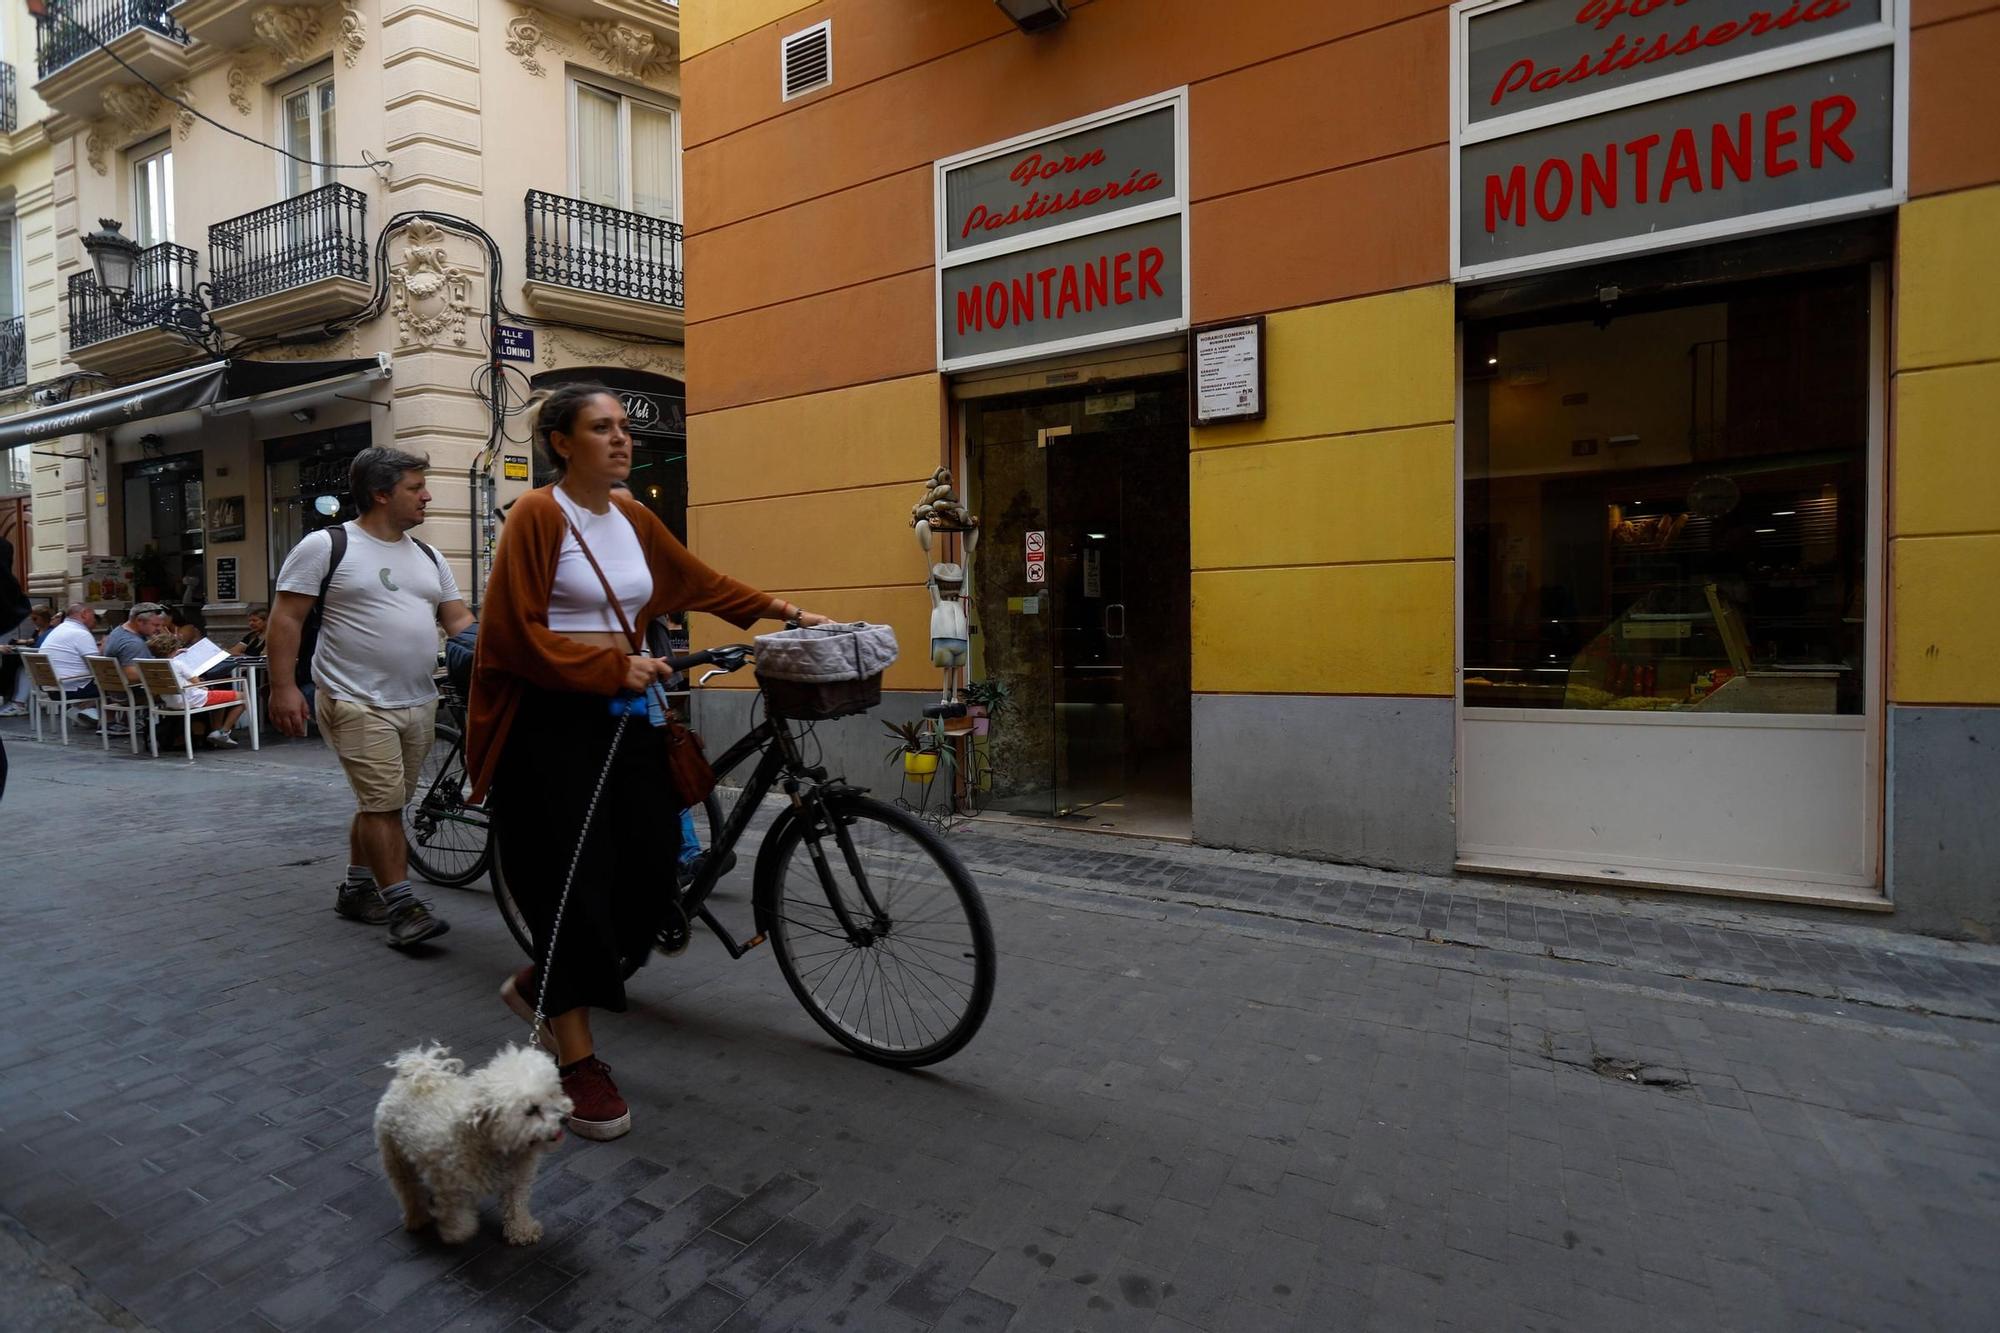 El comercio tradicional desaparece del centro de València por los altos alquileres